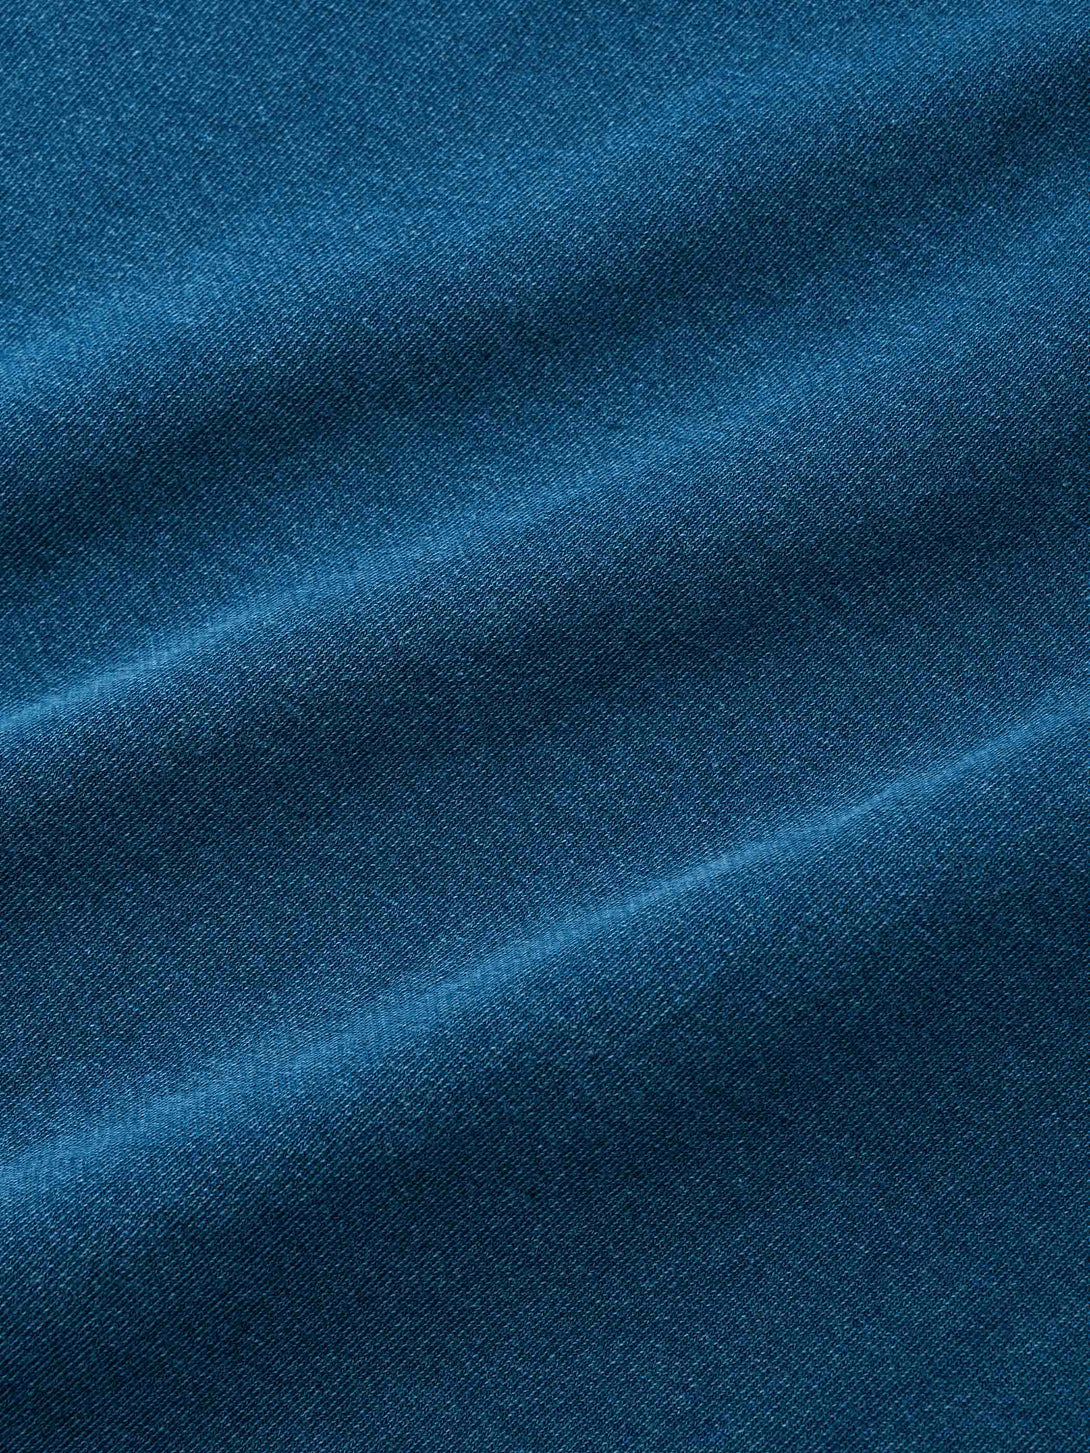 藍染めTシャツの袖のコンビデザイン、和風の花柄や雲と波柄の古布とウォッシュ加工